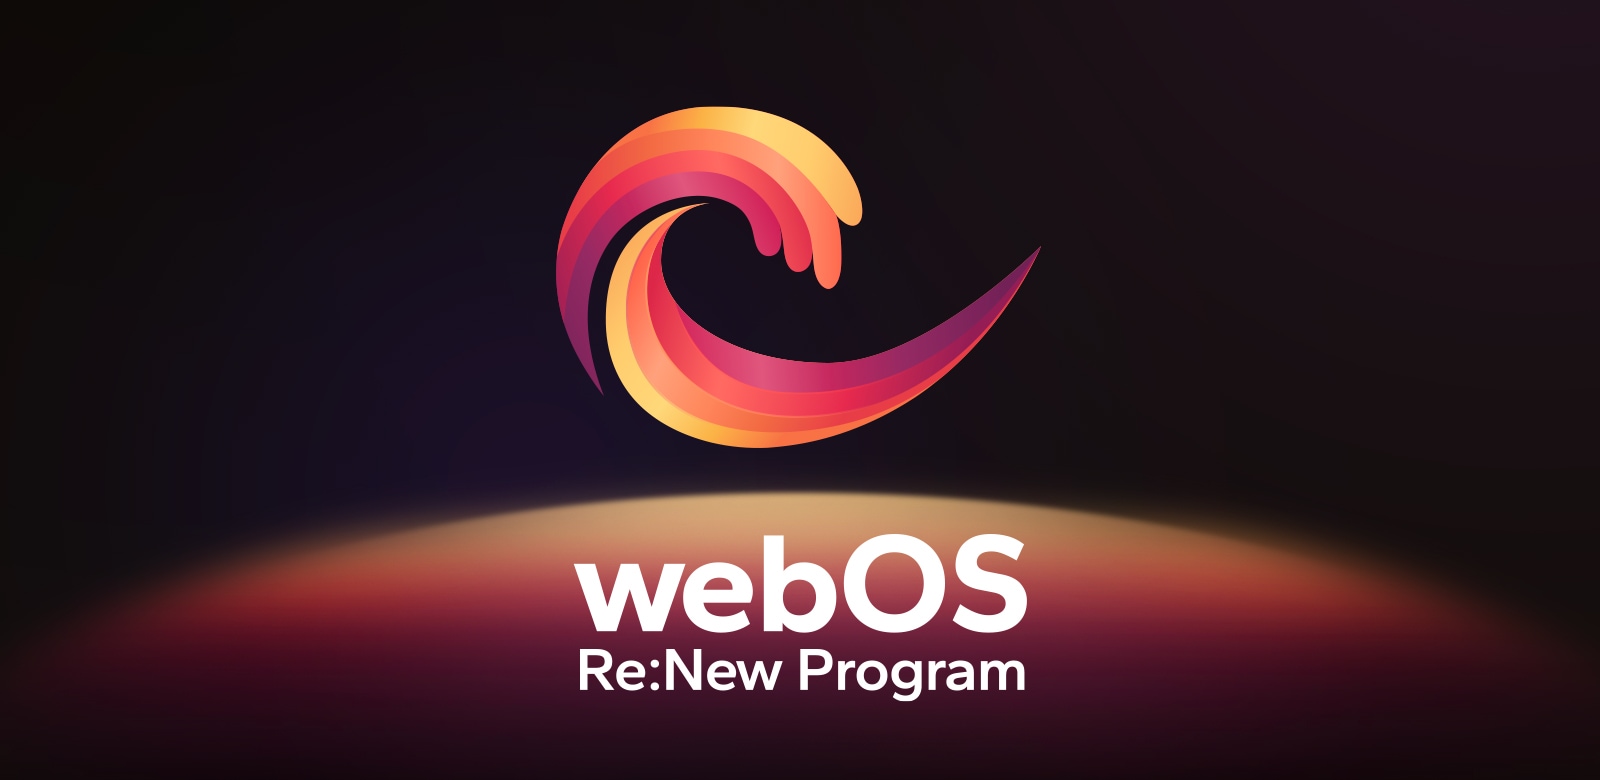 webOS Re:New Programm-Logo hat einen schwarzen Hintergrund mit einer gelben und orangefarbenen, violetten kreisförmigen Kugel am unteren Rand. 